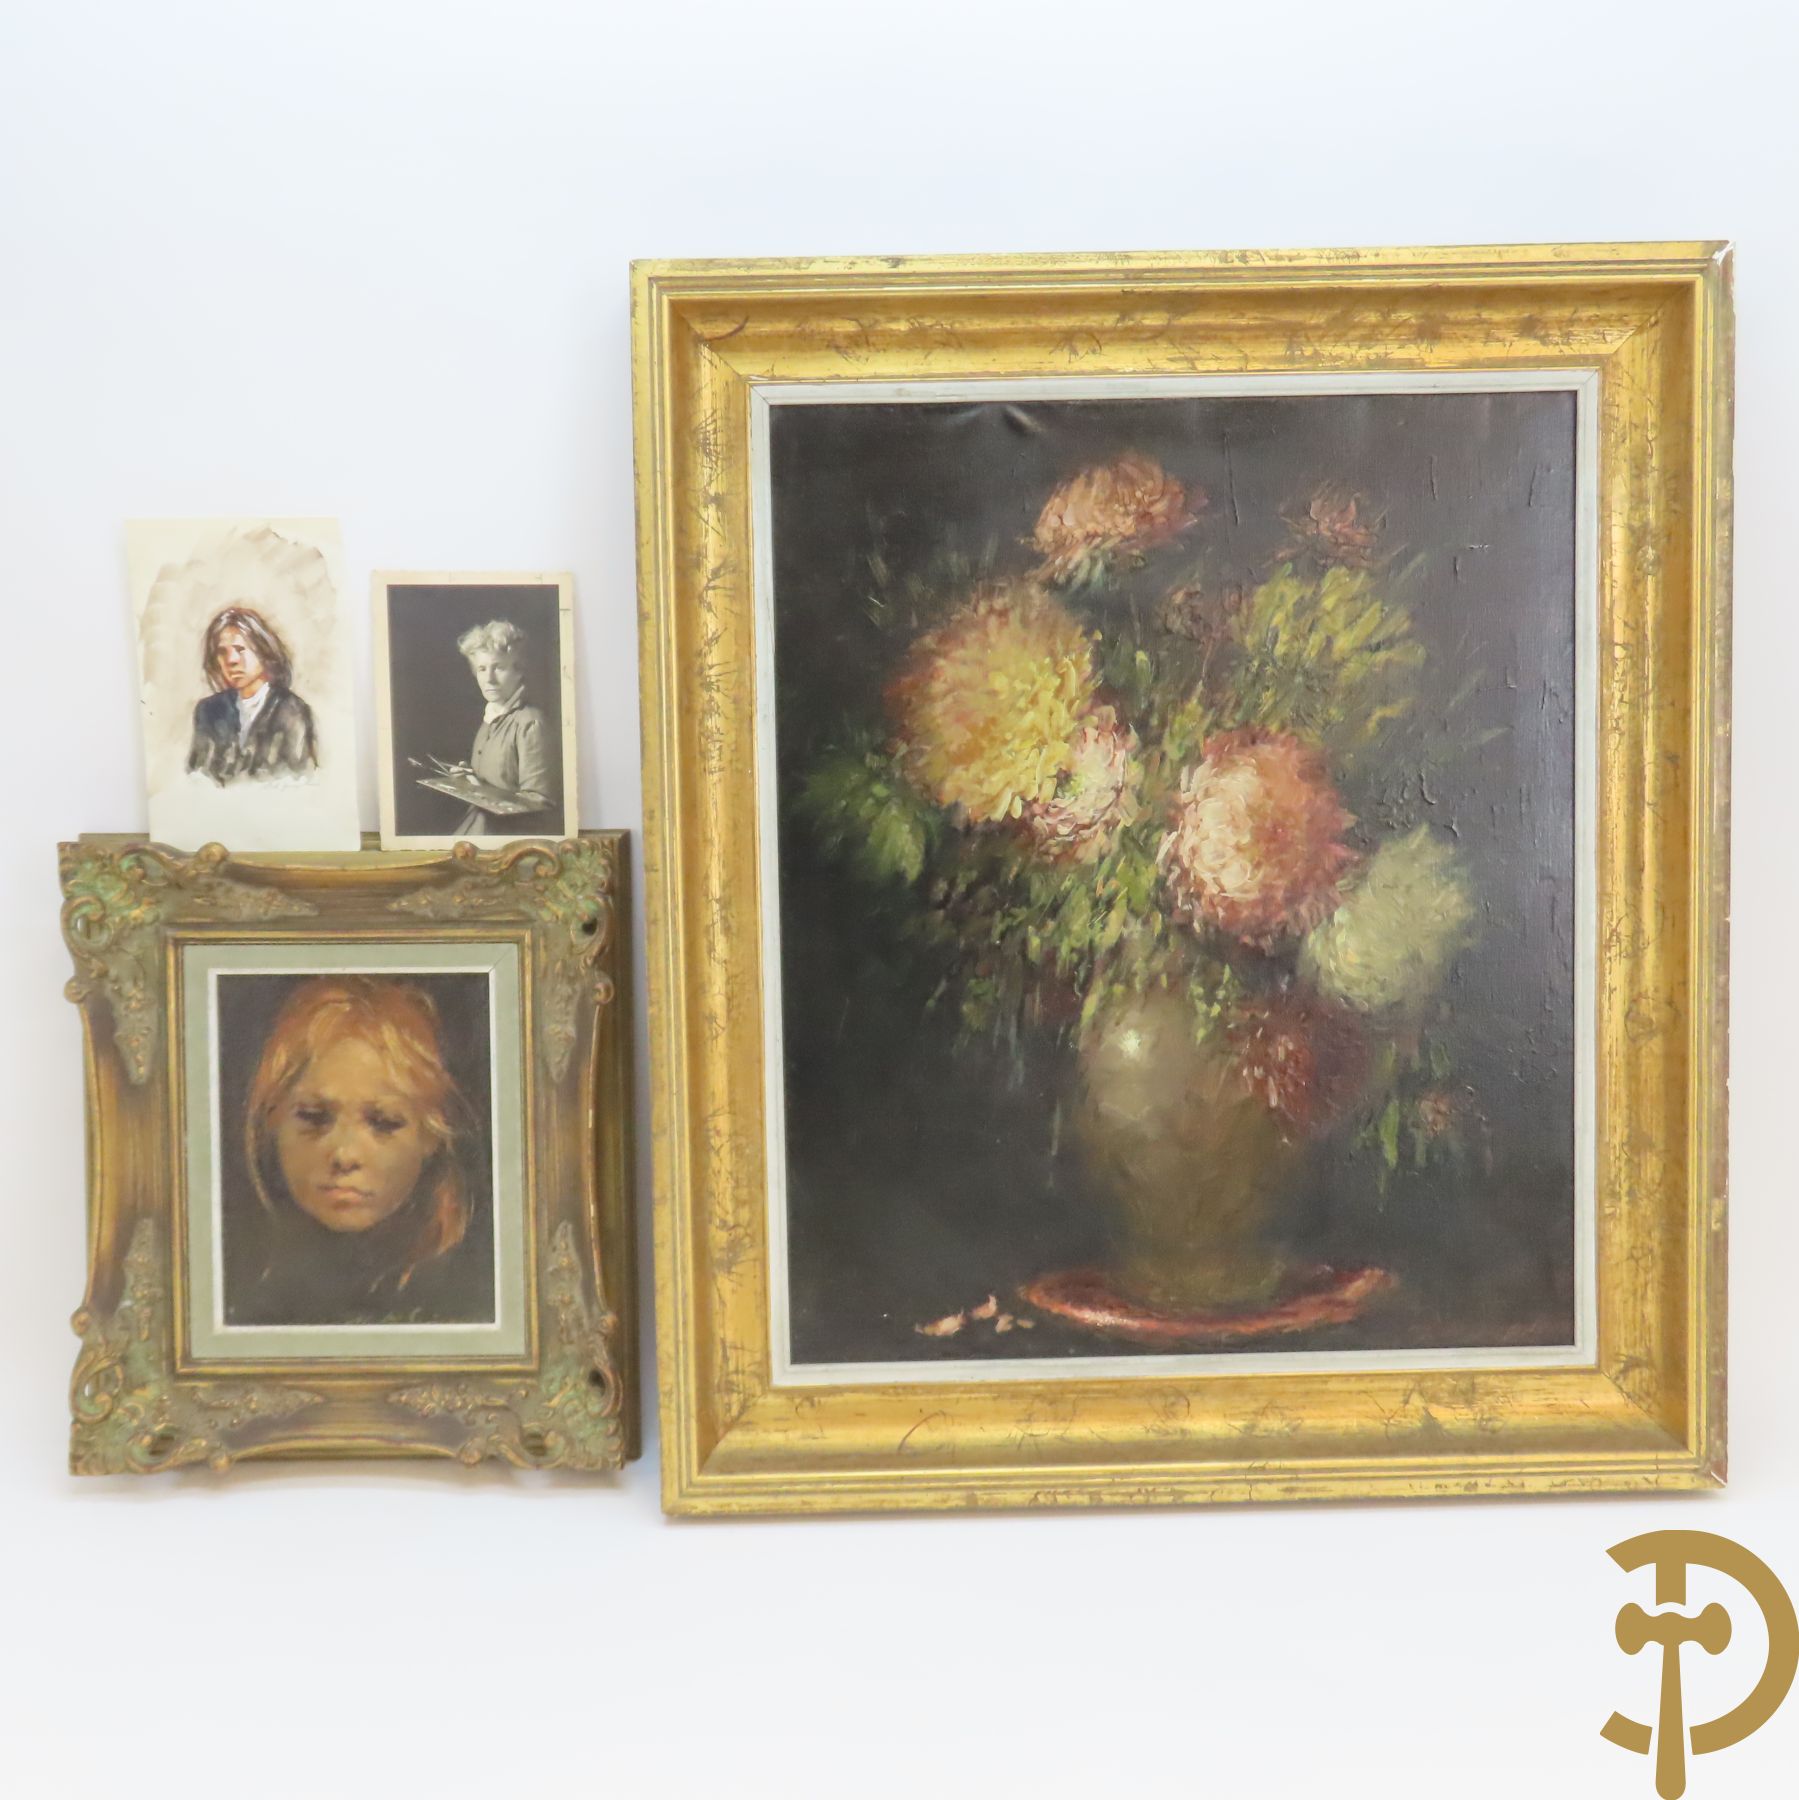 DE SPIEGELEIRE M. get. 'Meisjesportret' olie op doek + 'Bloemenstilleven' olie op doek + 'Portret' aquarel + postkaart